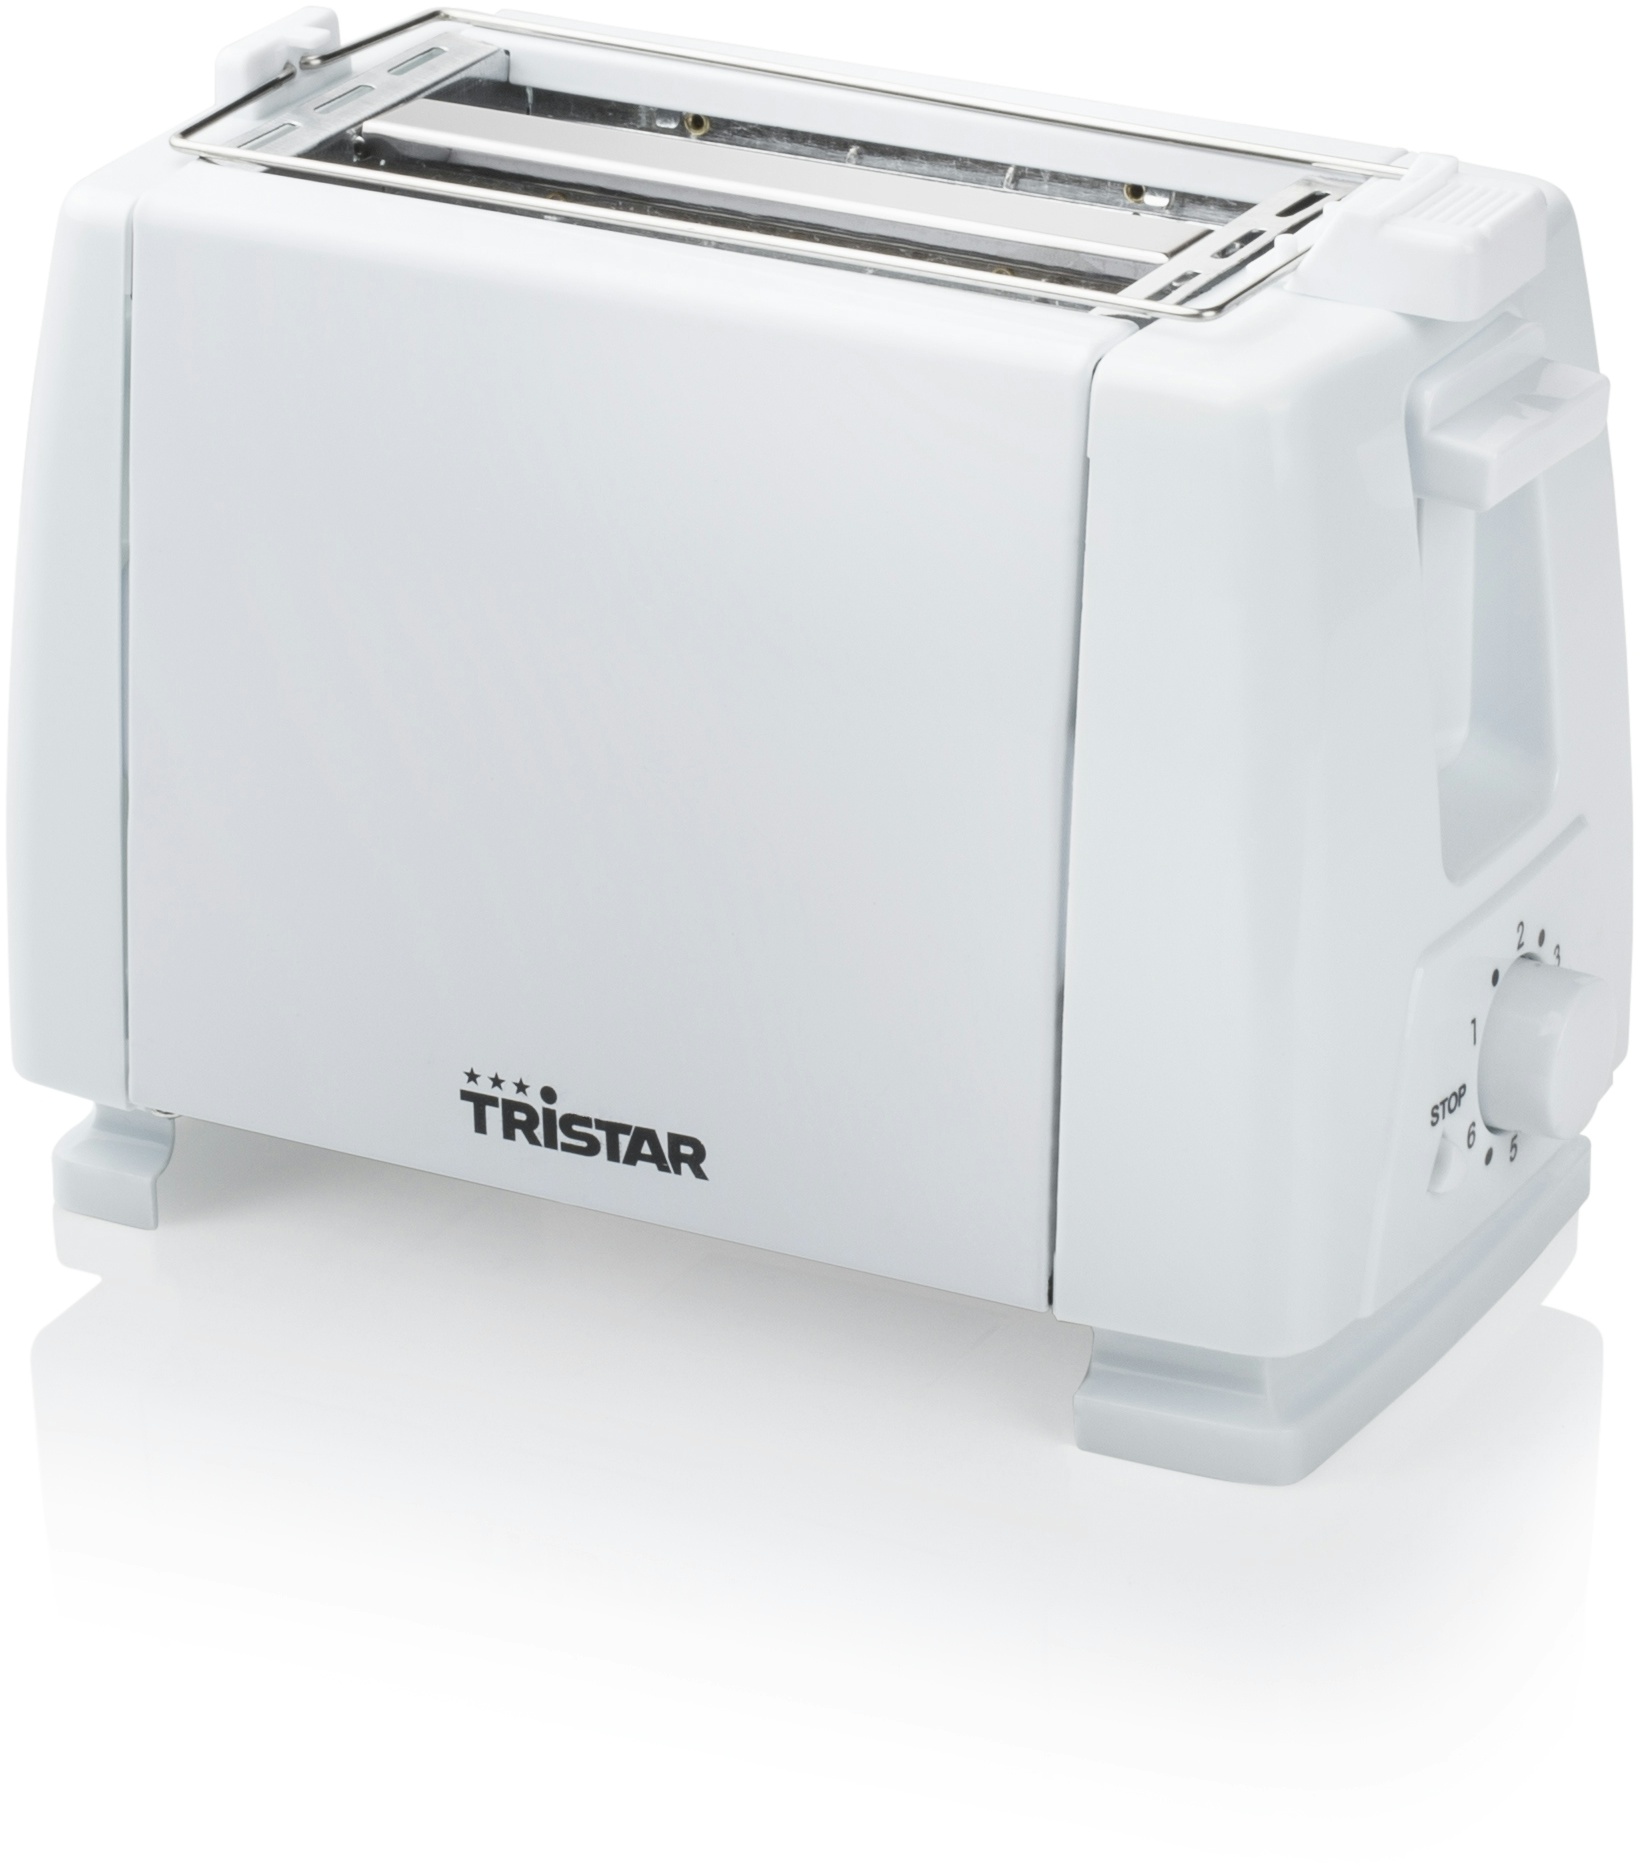 TRISTAR Toaster mit 2 Schlitzen, 6 Bräunungsstufen, Abschalt- und Auswurfautomatik, Brotablage, rutschfester Sockel, 650 Watt.